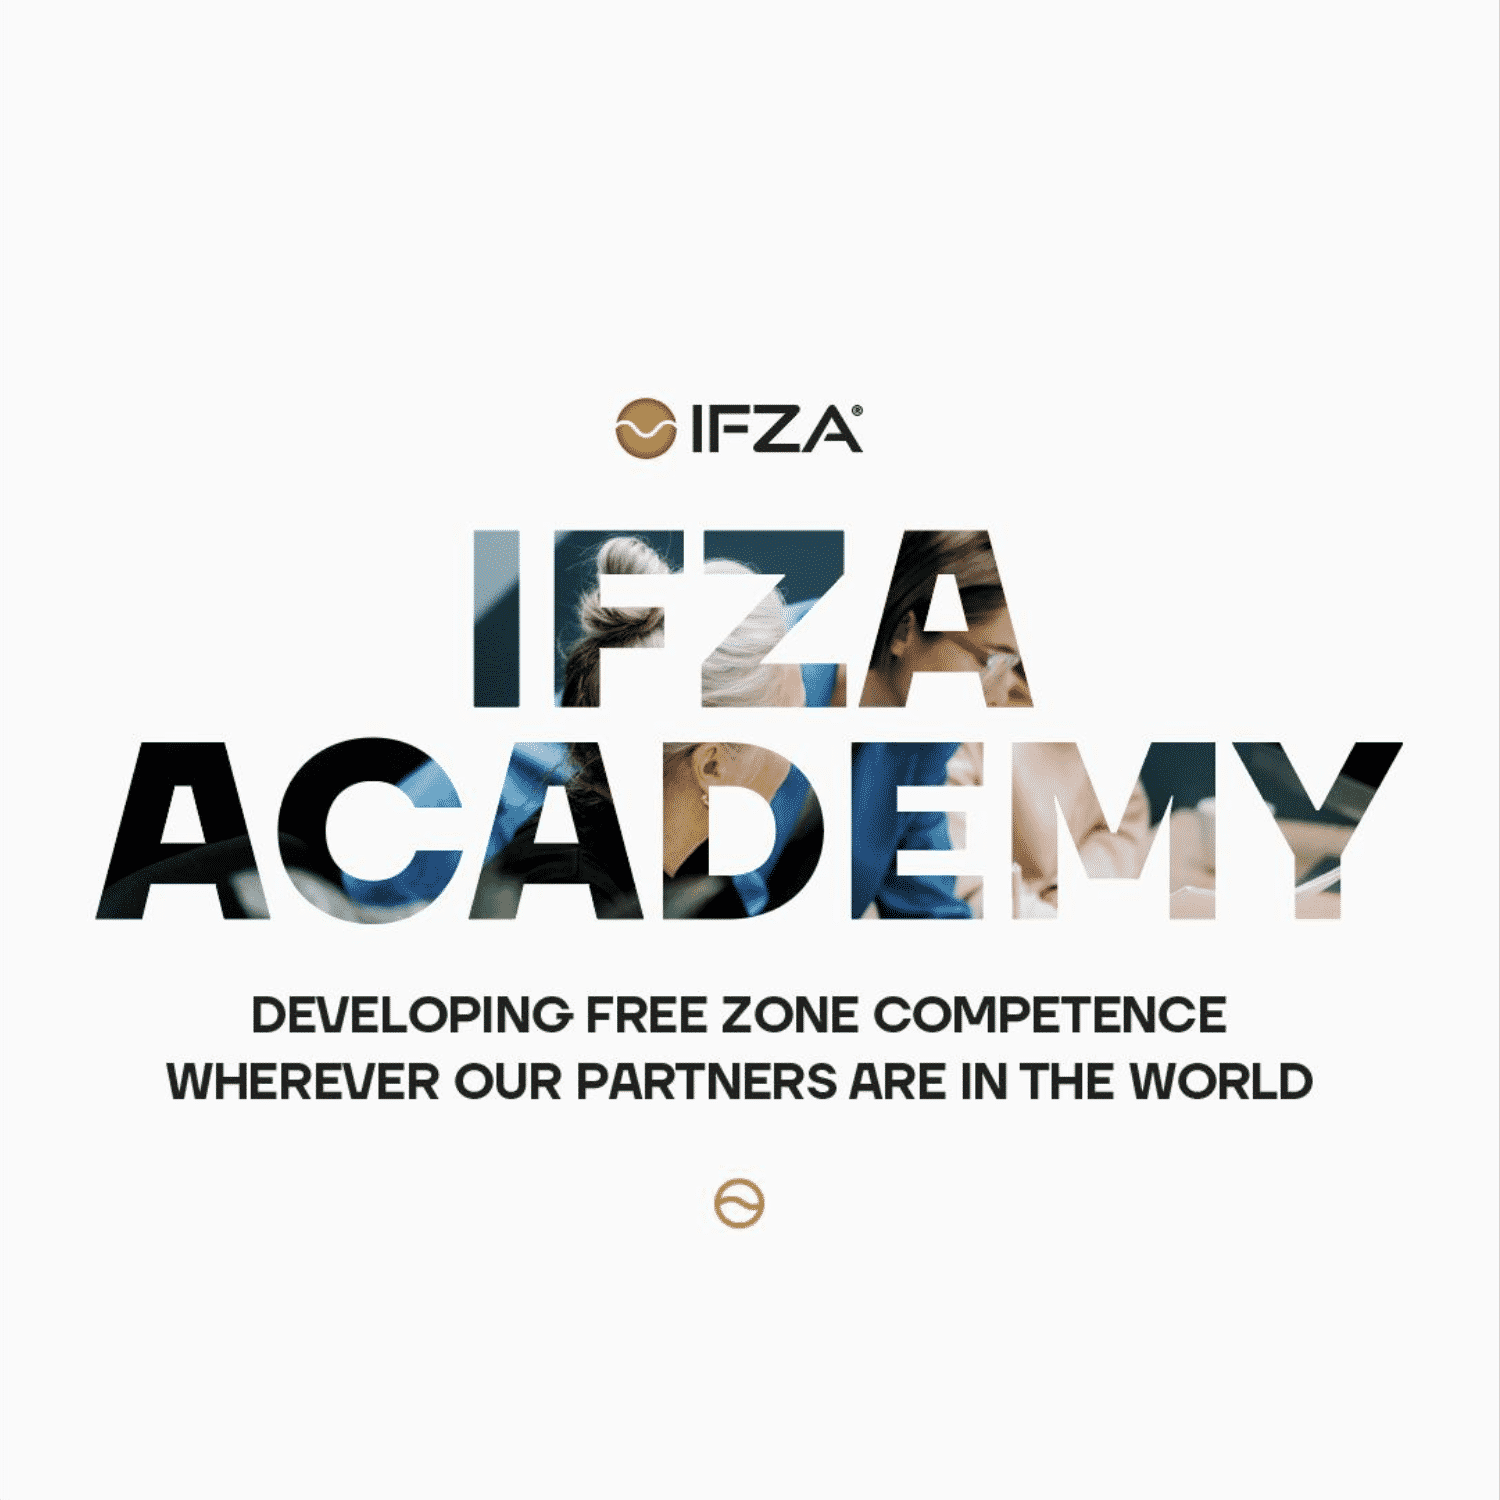 IFZA Academy